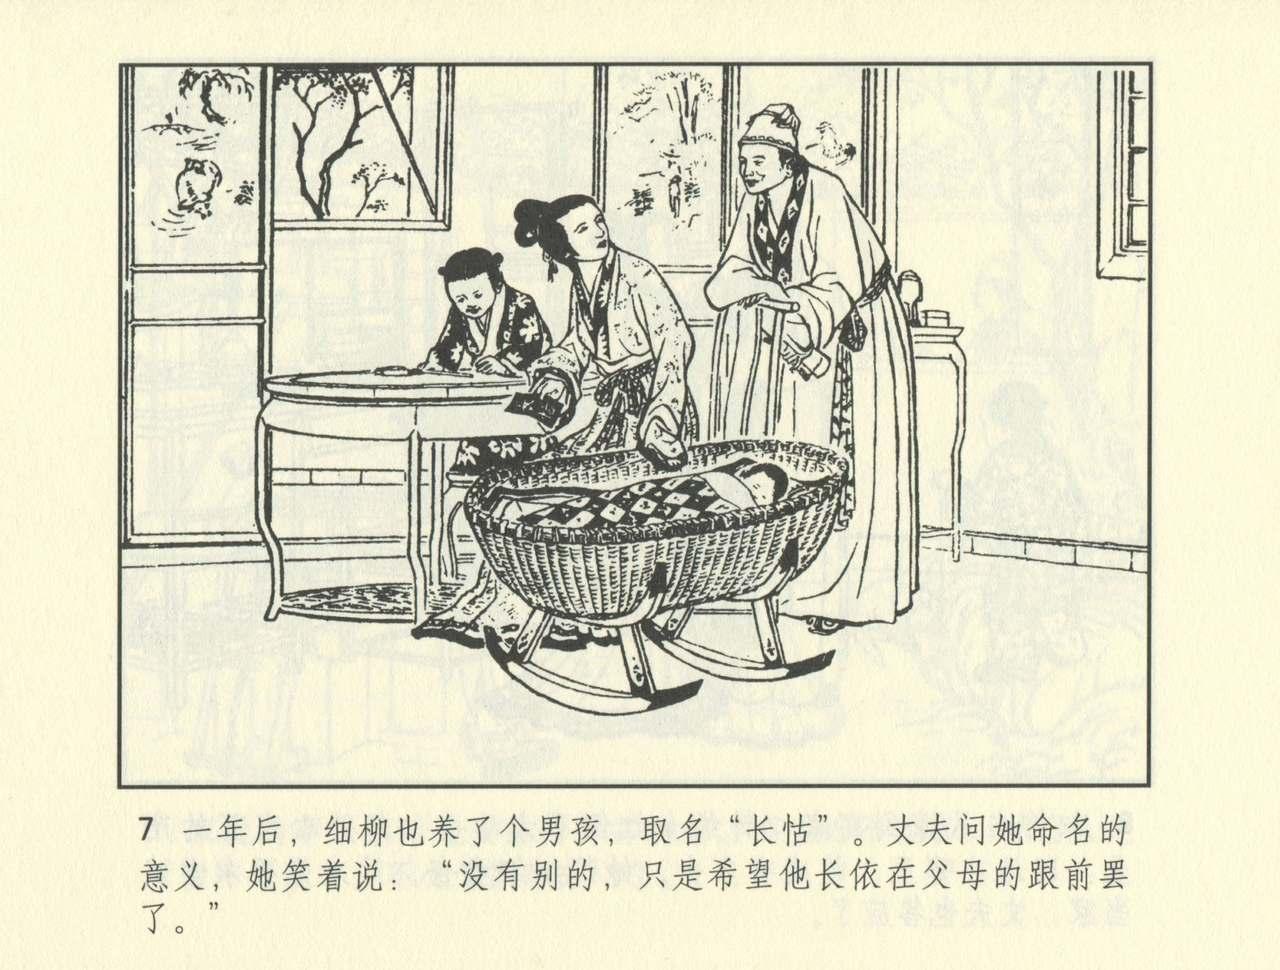 聊斋志异 张玮等绘 天津人民美术出版社 卷二十一 ~ 三十 479